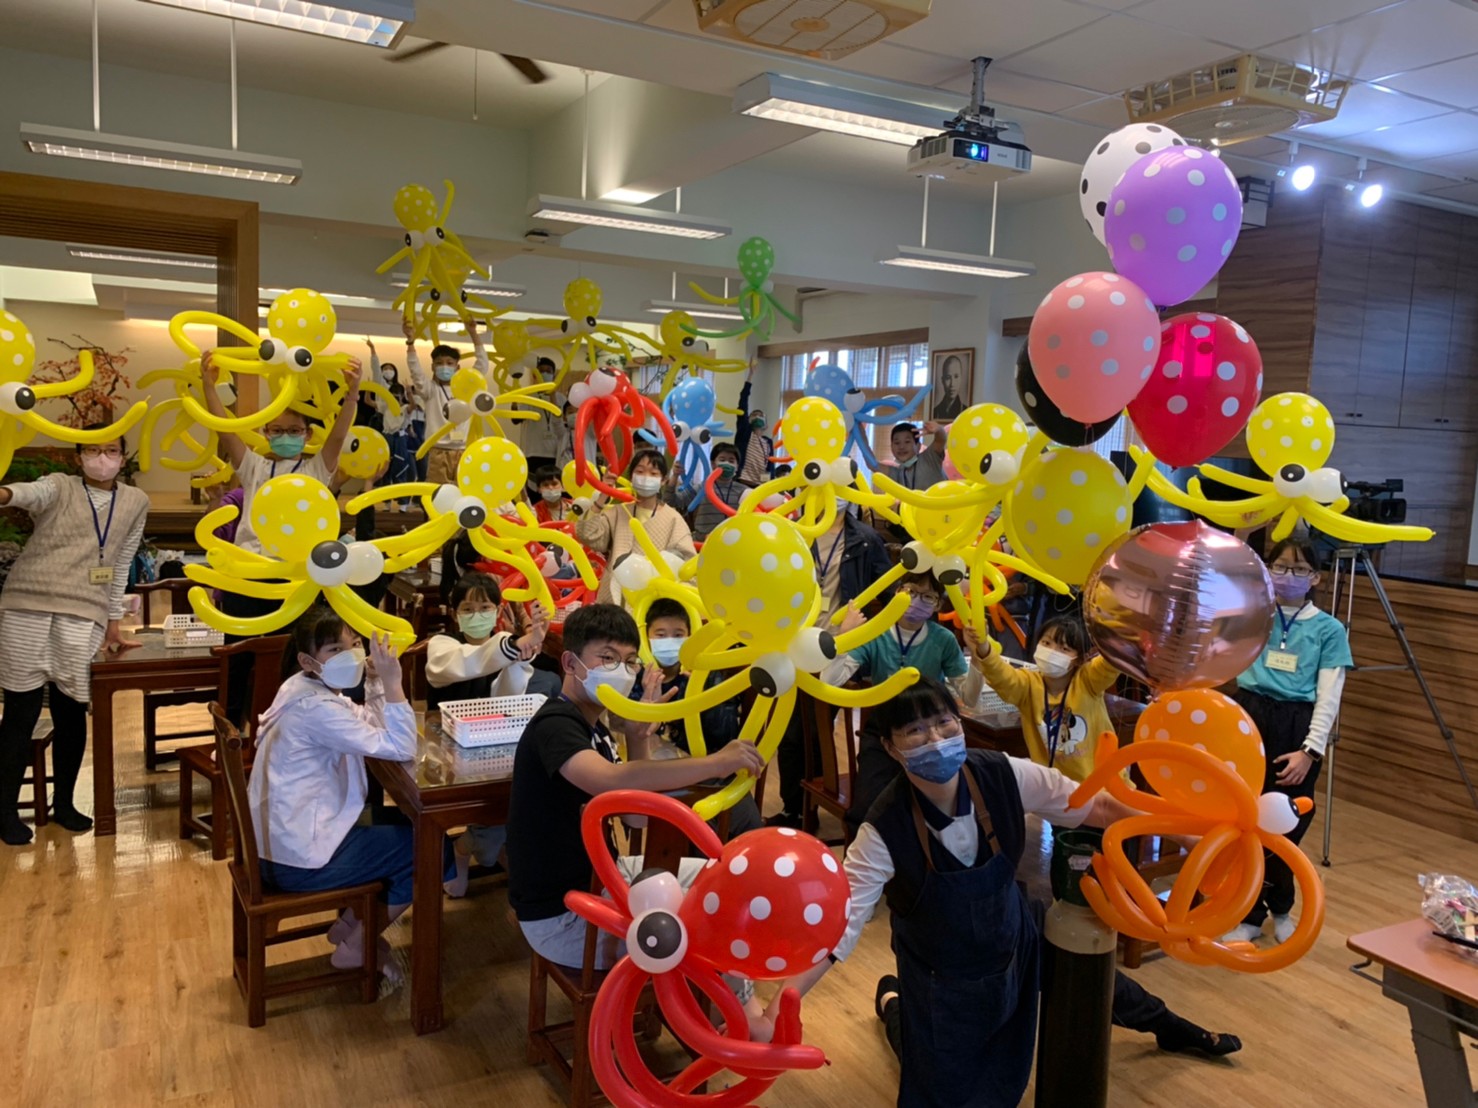 繽紛氣球課程讓學生體驗手作造形氣球的樂趣。